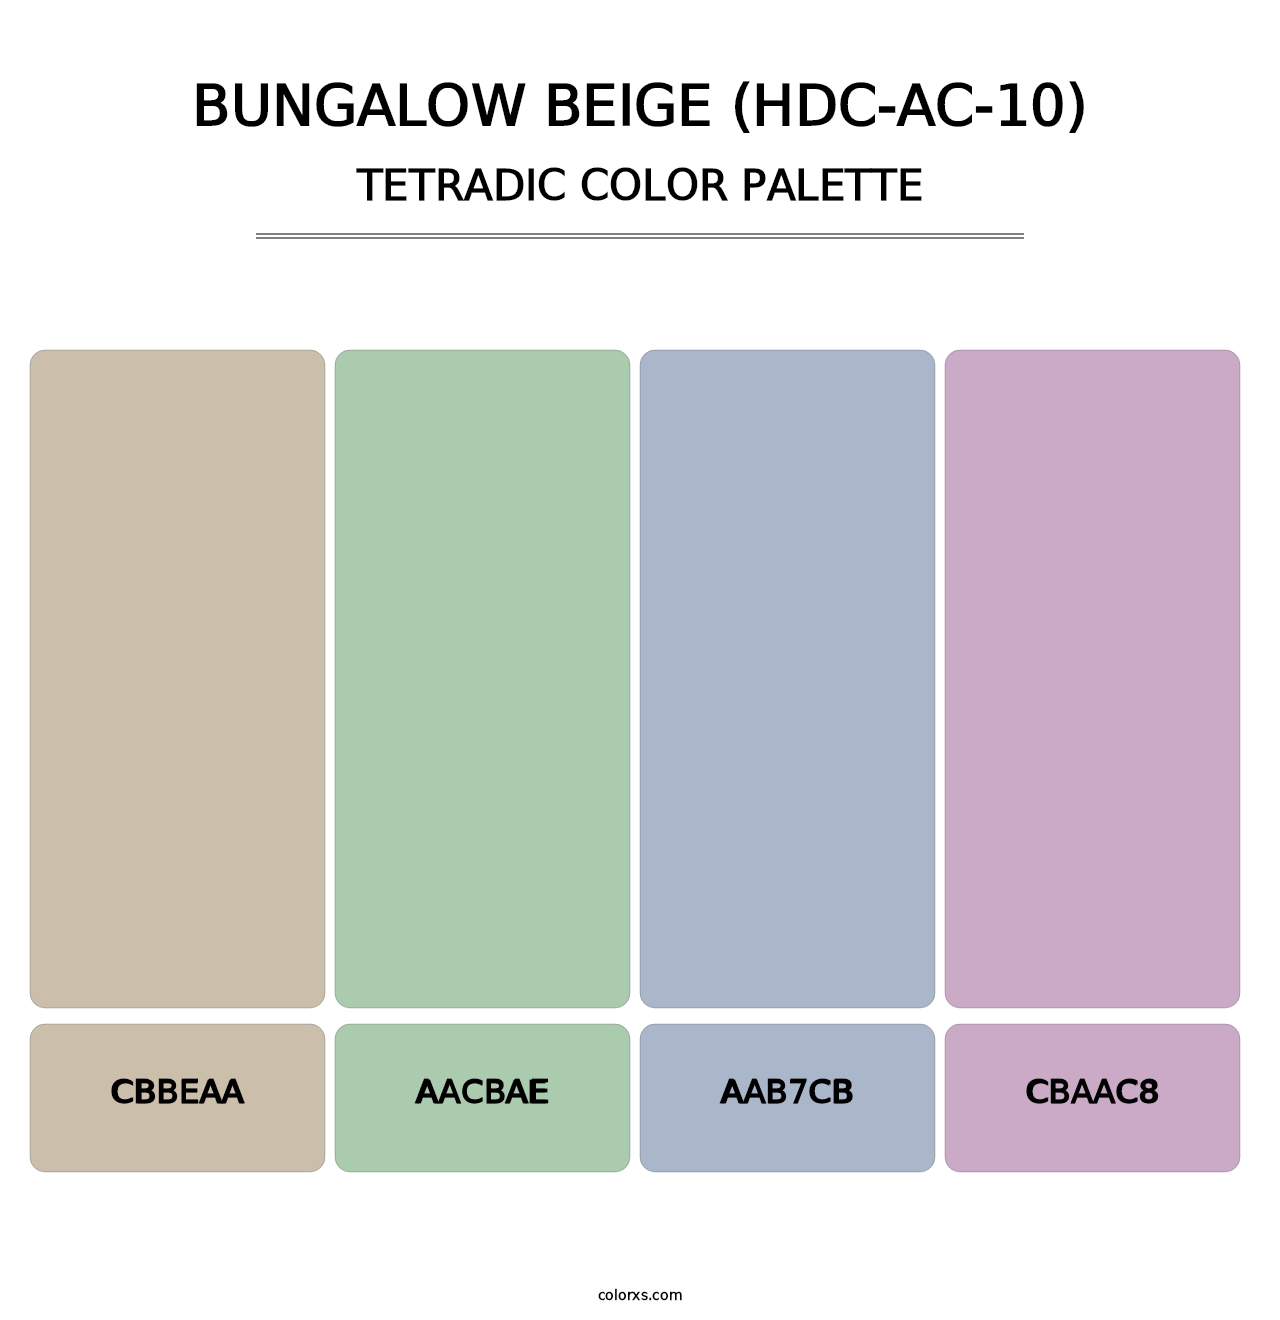 Bungalow Beige (HDC-AC-10) - Tetradic Color Palette